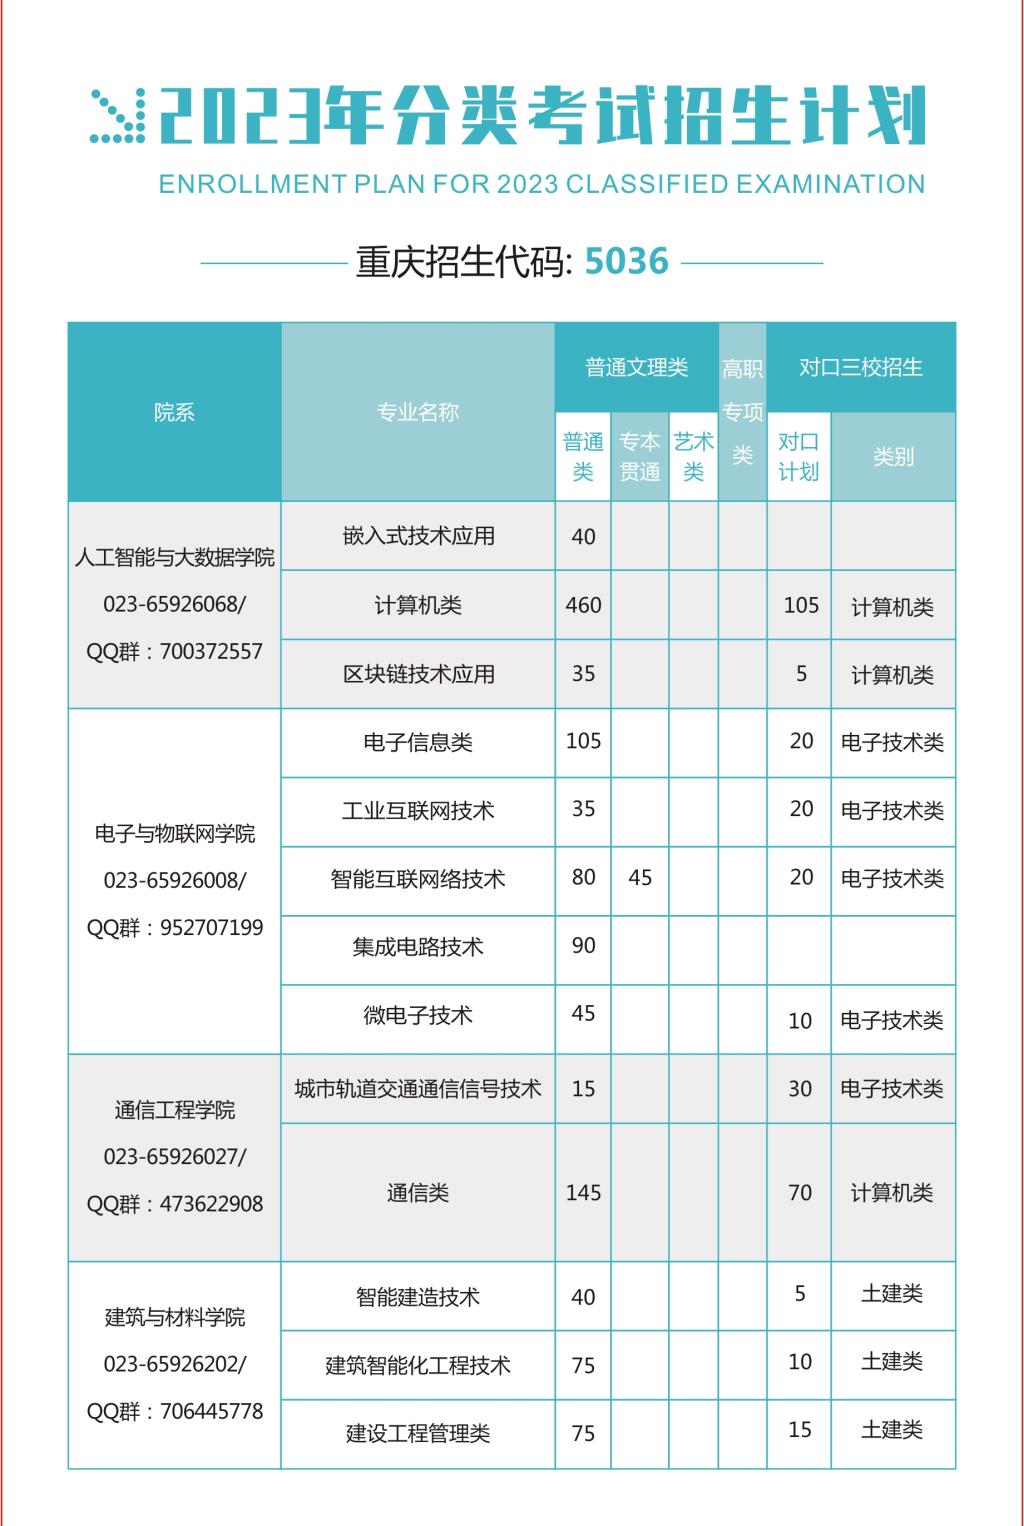 重庆电子工程职业学院－2023年分类考试招生简章4